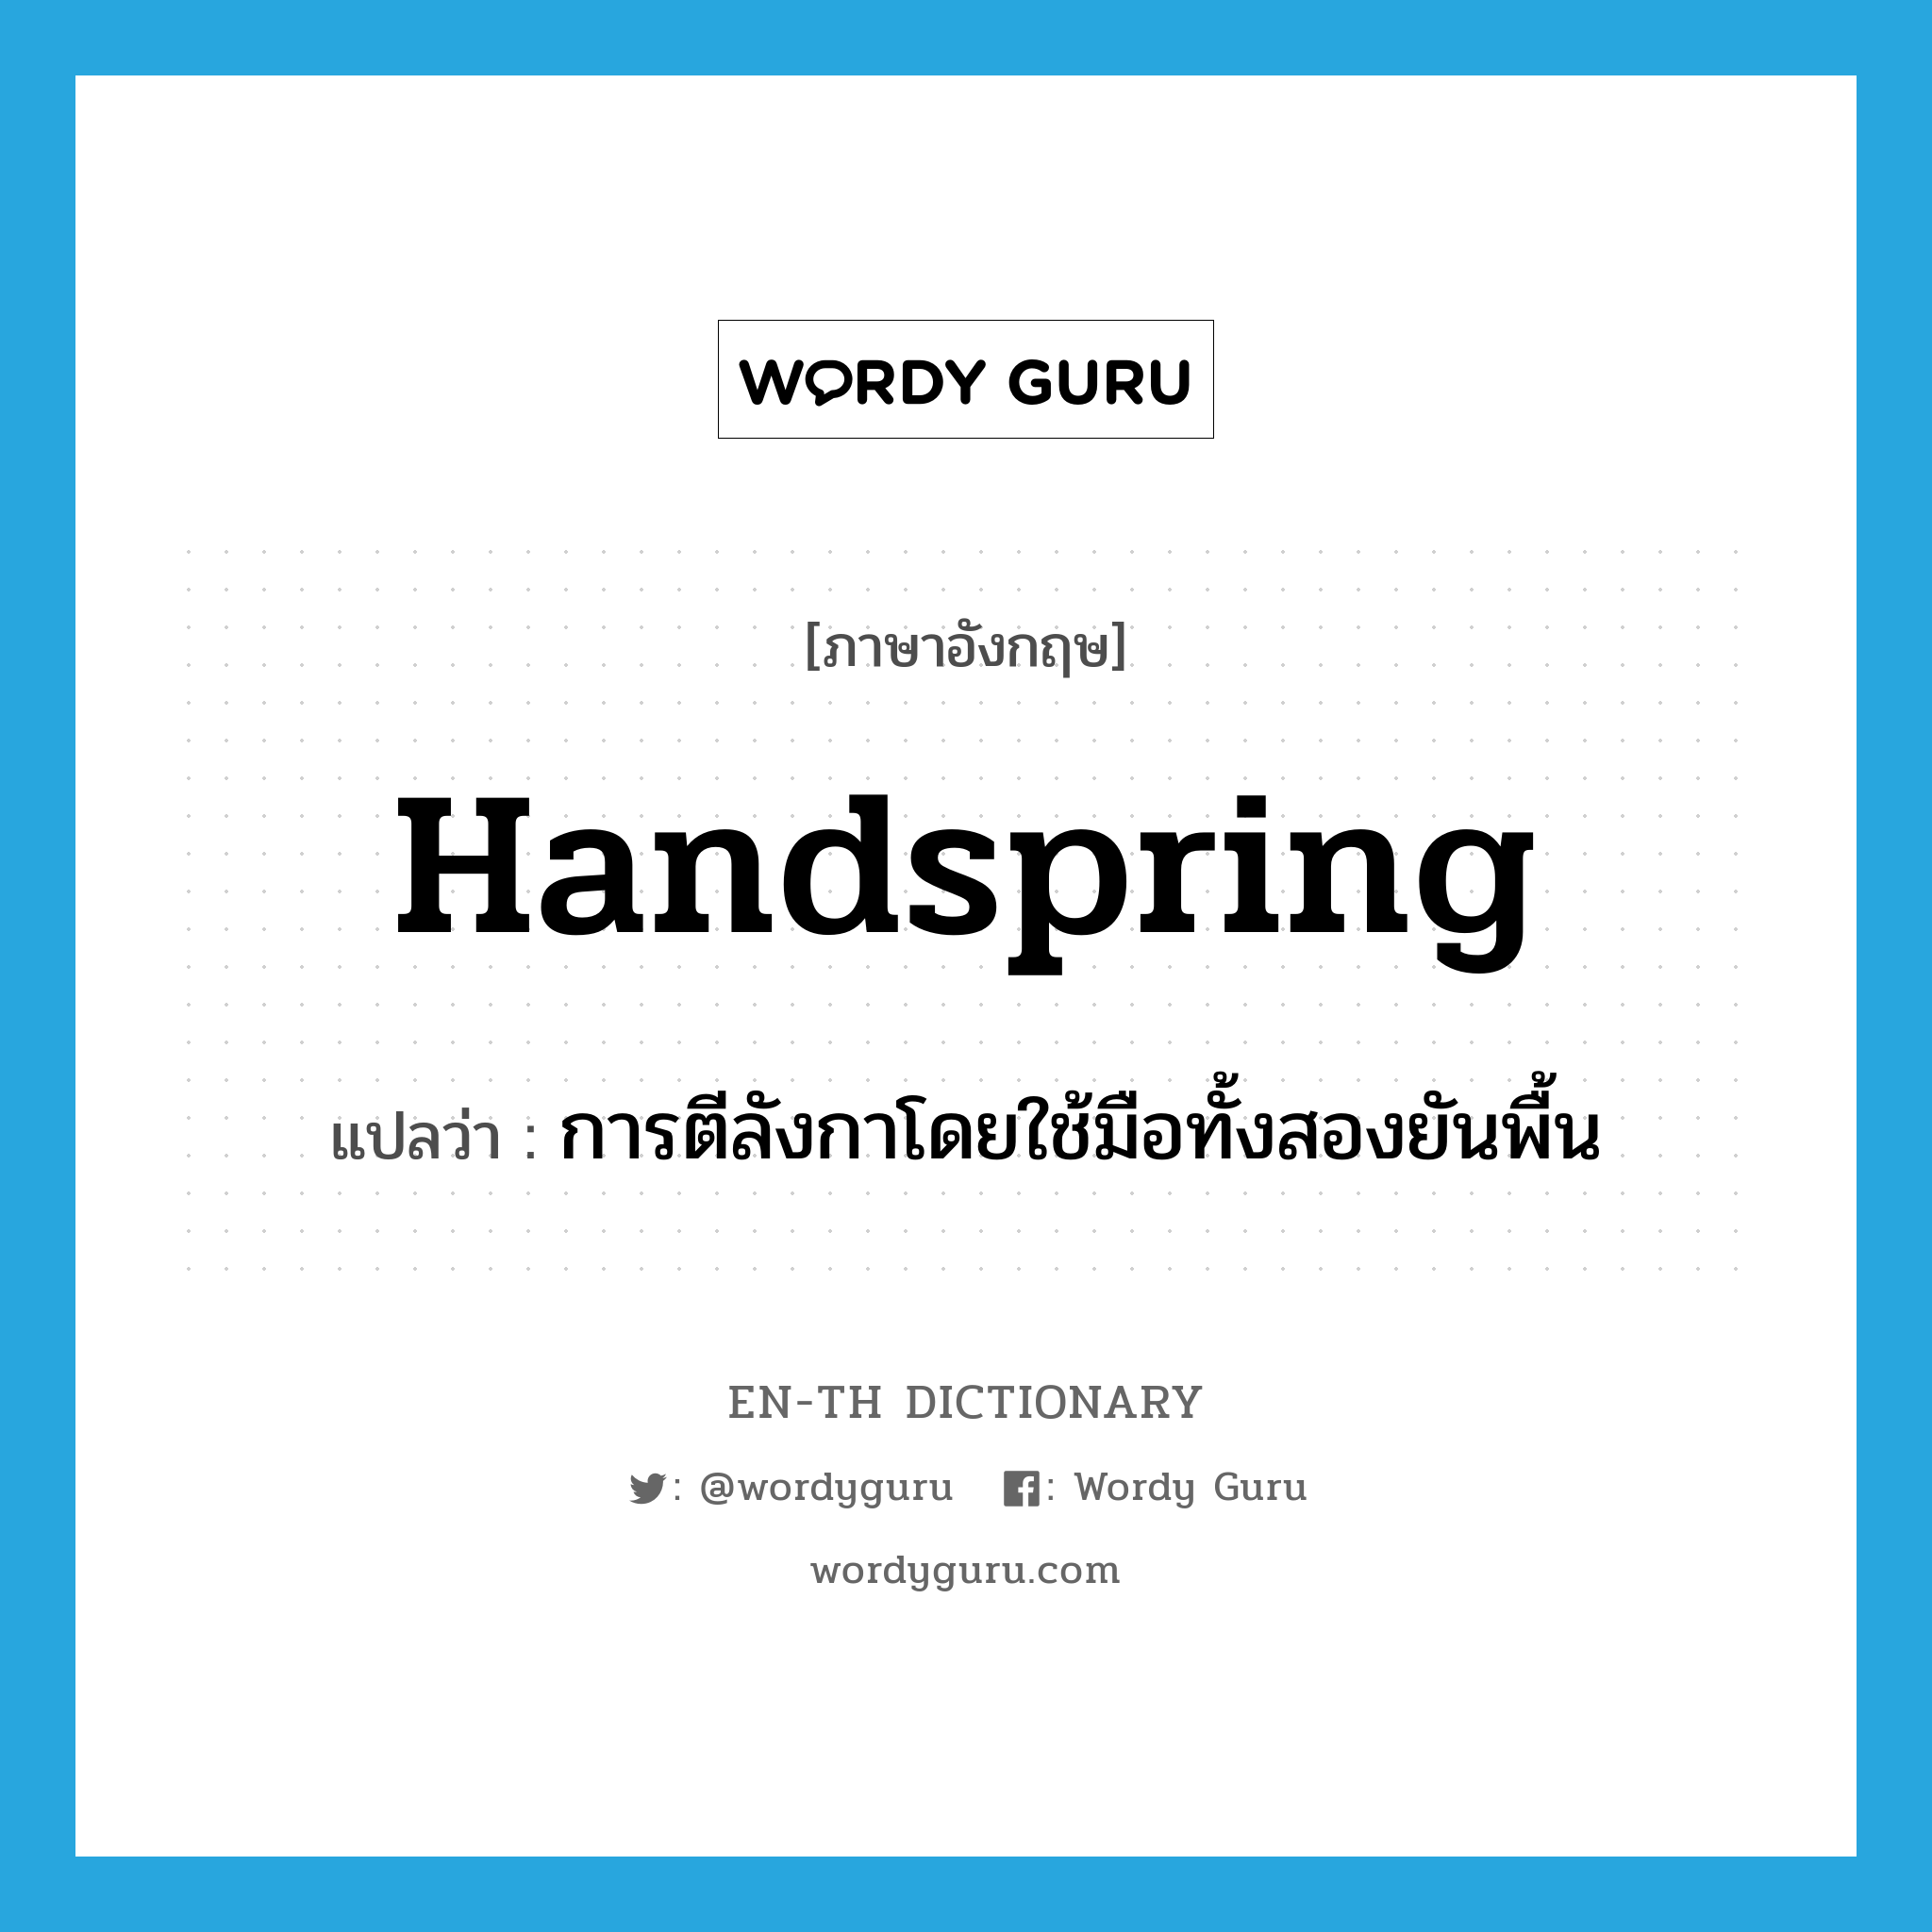 handspring แปลว่า?, คำศัพท์ภาษาอังกฤษ handspring แปลว่า การตีลังกาโดยใช้มือทั้งสองยันพื้น ประเภท N หมวด N